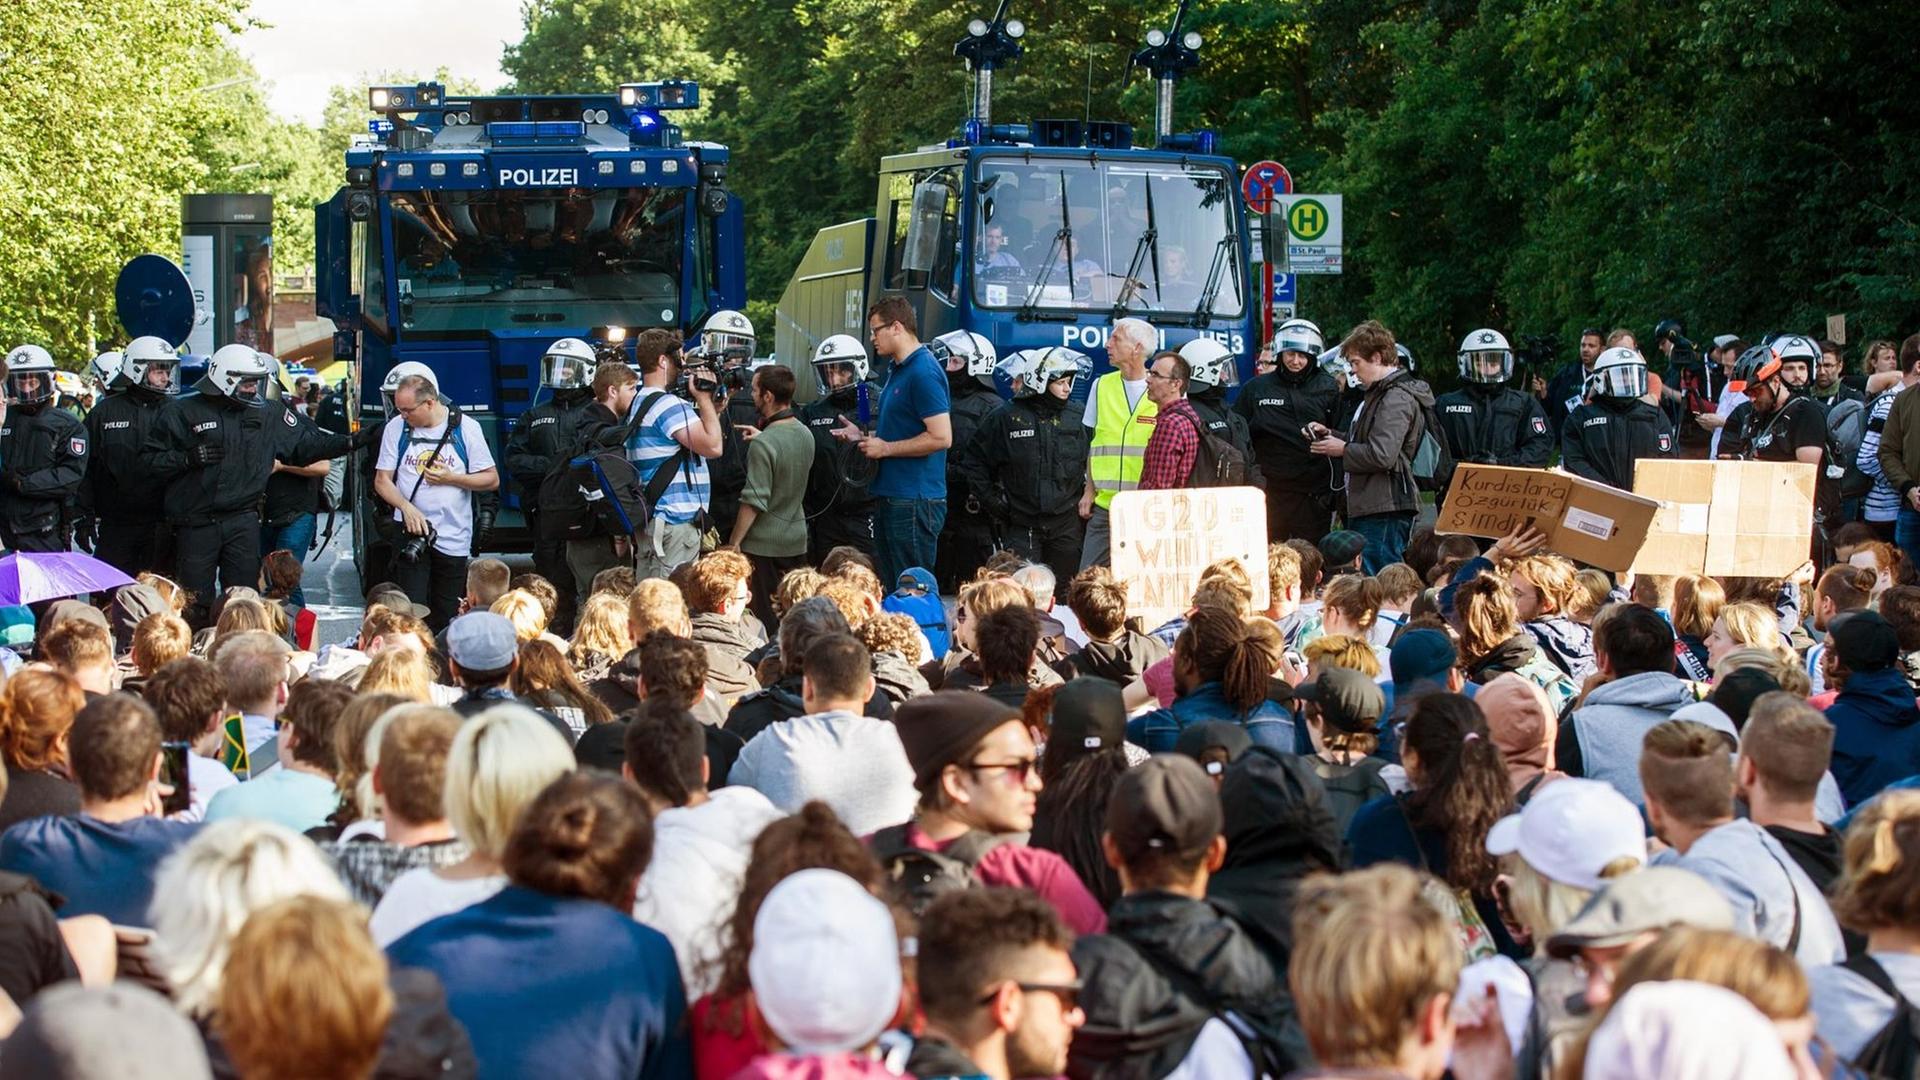 Teilnehmer einer Sitzblockade sitzen am 8. Juli 2017 in Hamburg nach der Demonstration "Grenzenlose Solidarität statt G20" Polizisten mit zwei Wasserwerfern gegenüber. Der G20-Gipfel der Staats-und Regierungschefs fand am 7. und 8. Juli 2017 in Hamburg statt. Bei den Demonstrationen gegen den Gipfel kam es zu schweren Krawallen.